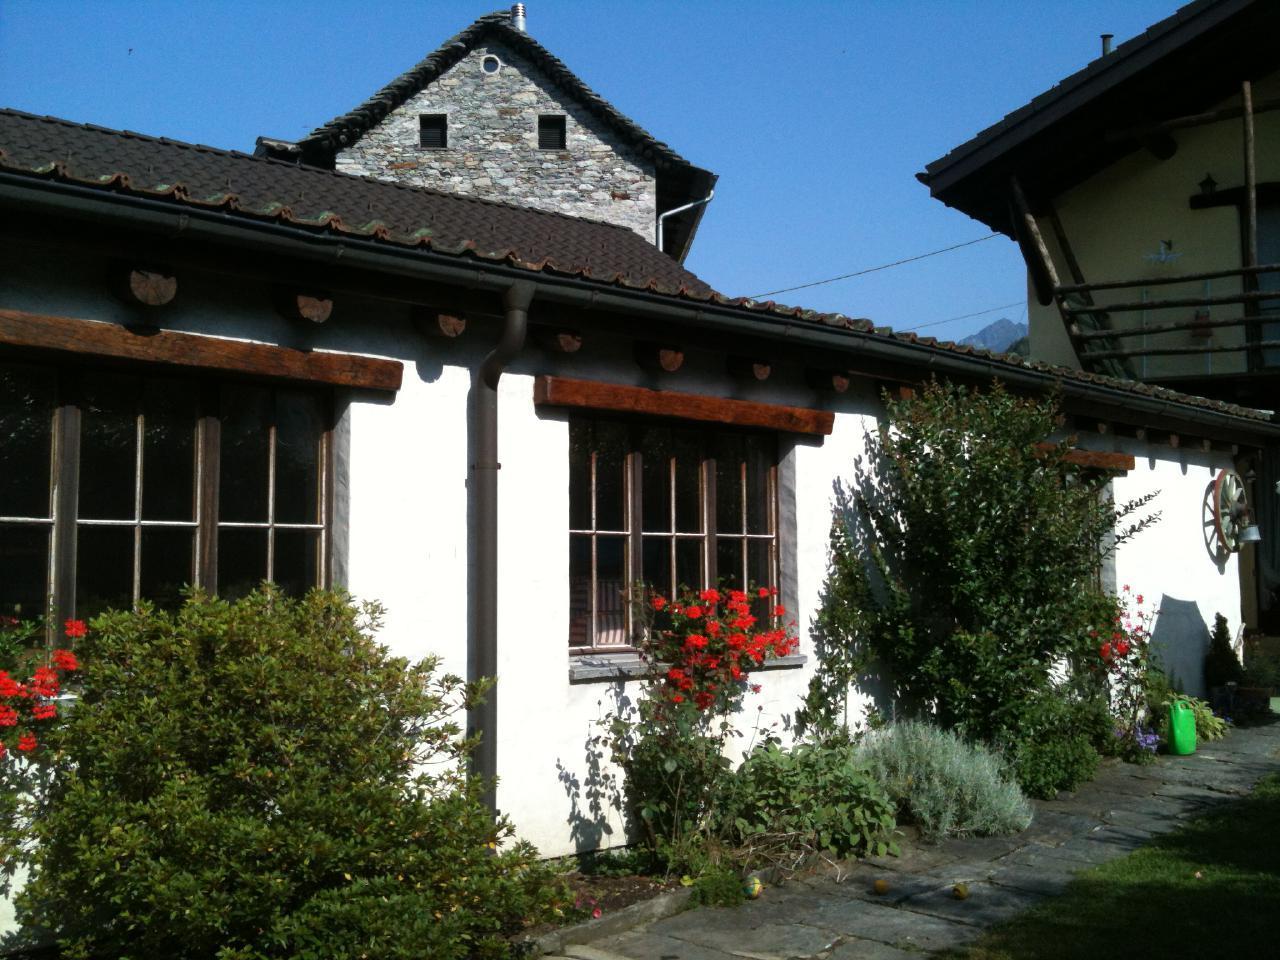 Casa San Cristoforo - "Atelier" Ferienhaus in der Schweiz